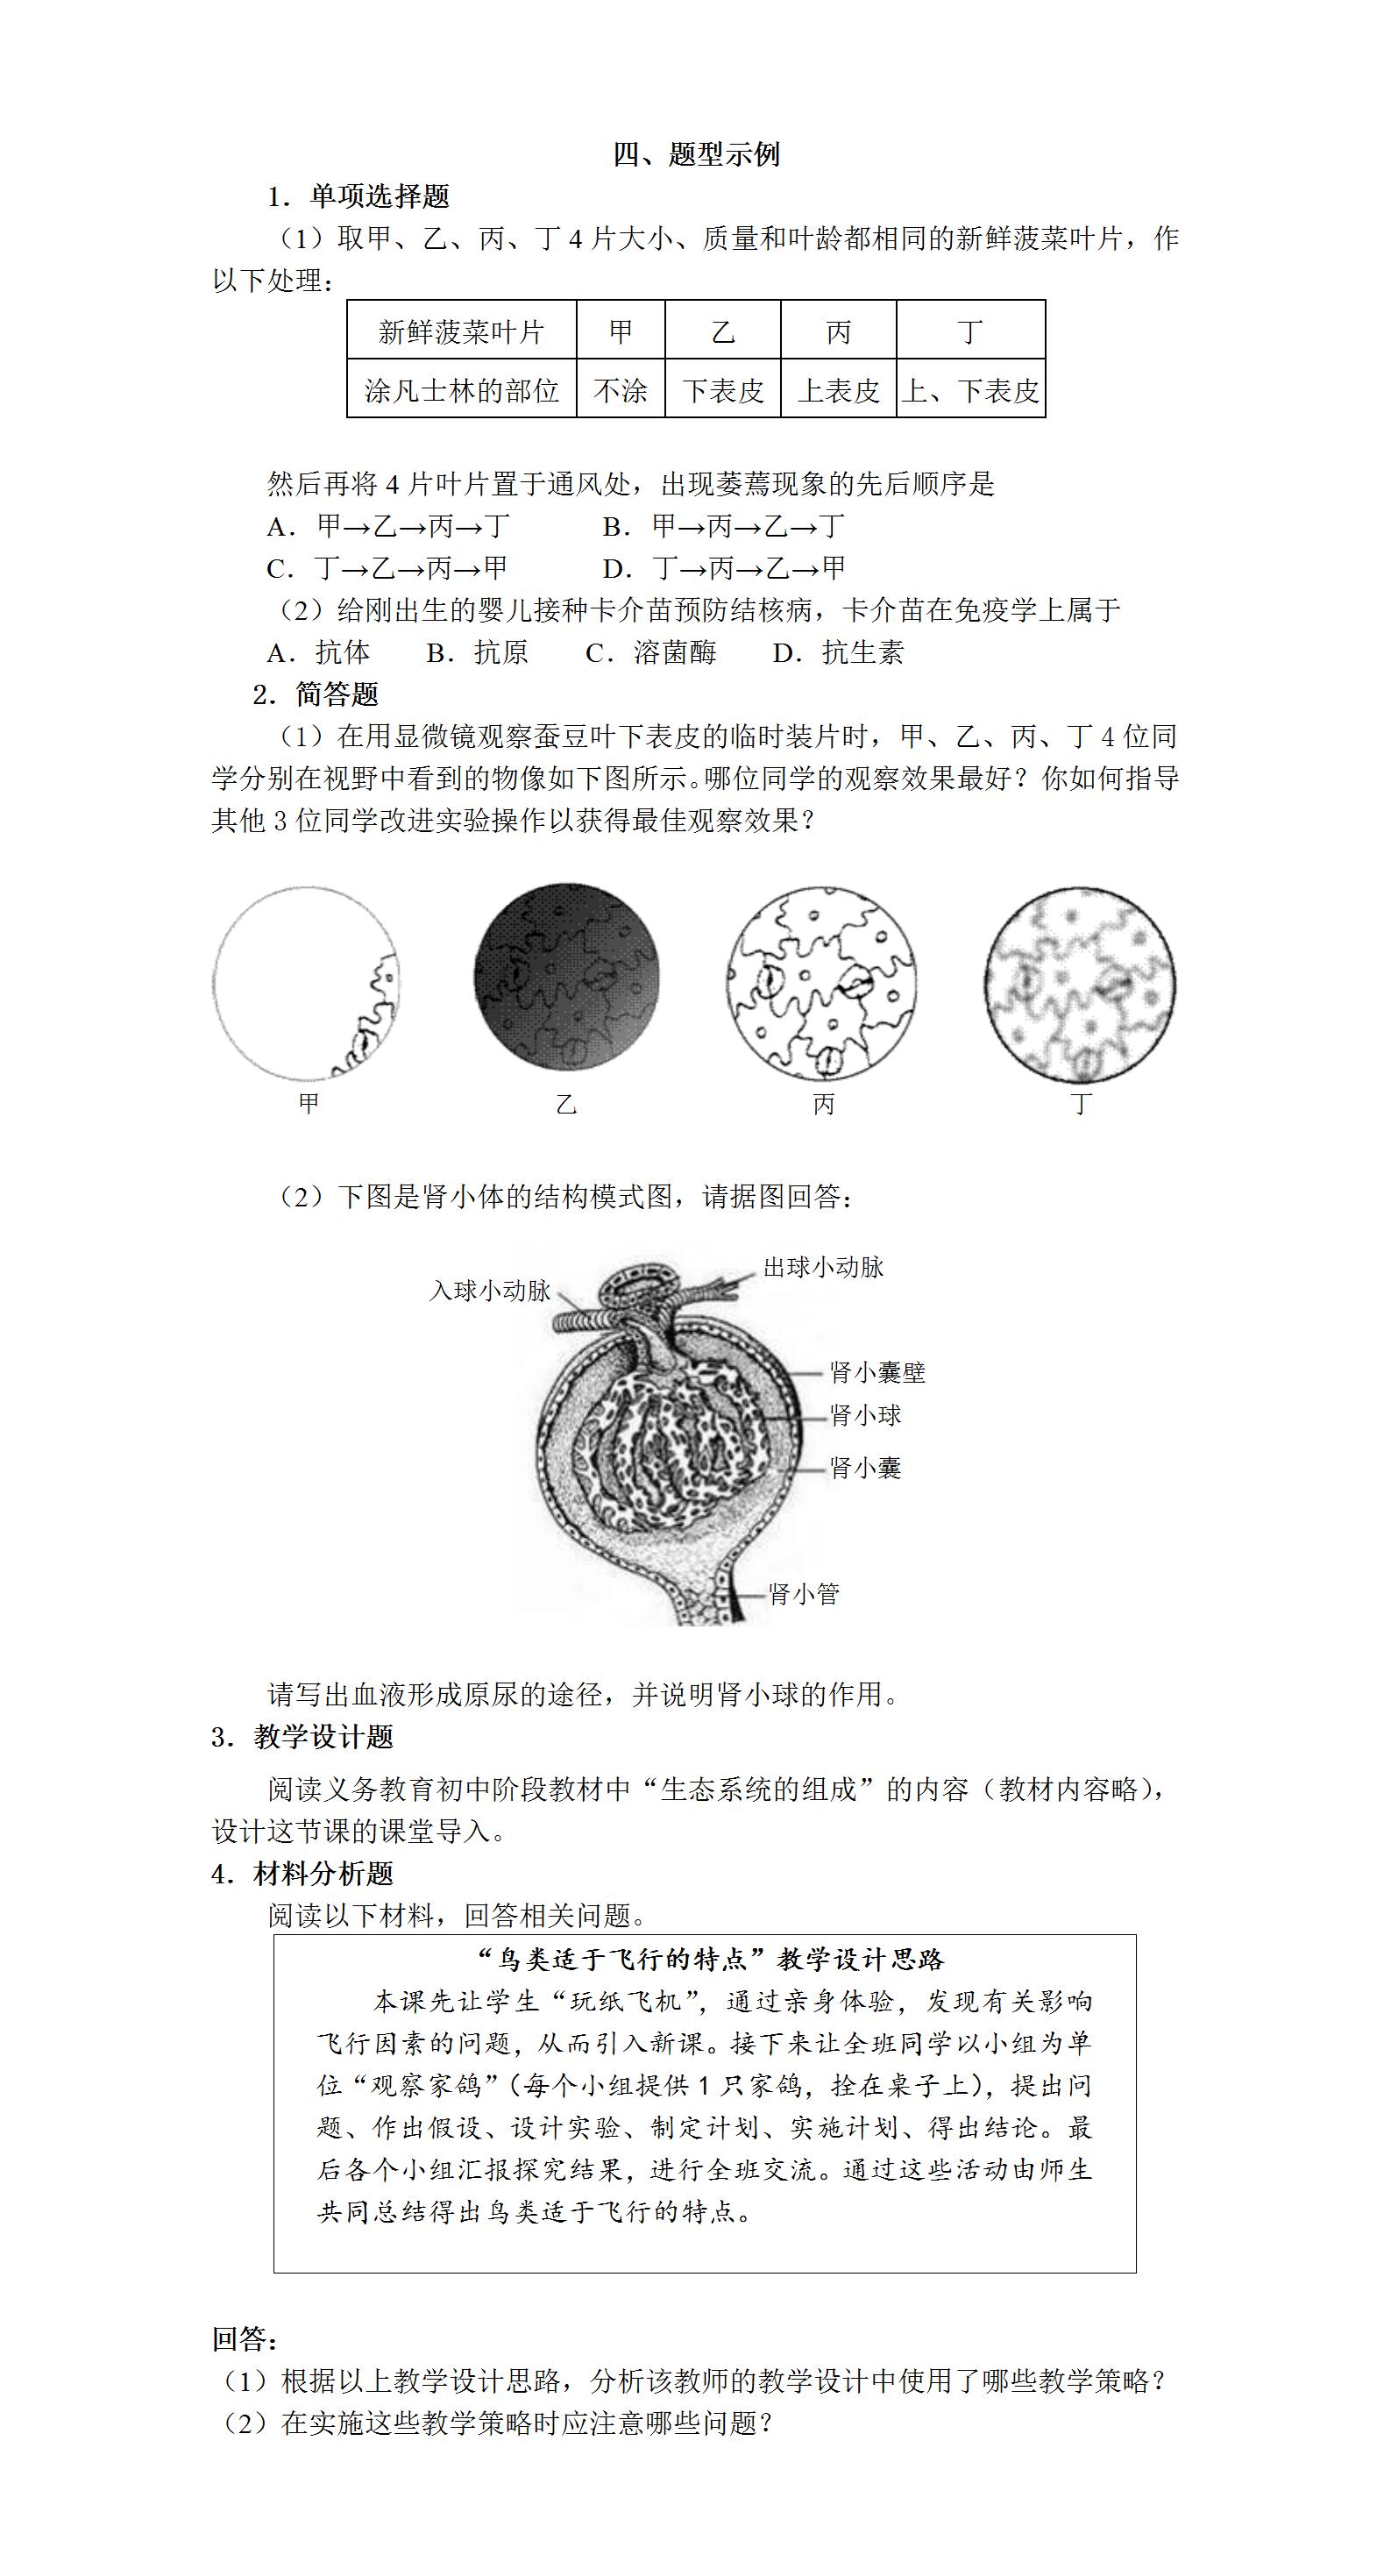 重庆中学教师资格笔试考试大纲：《生物学科知识与教学能力》(初级中学) 2